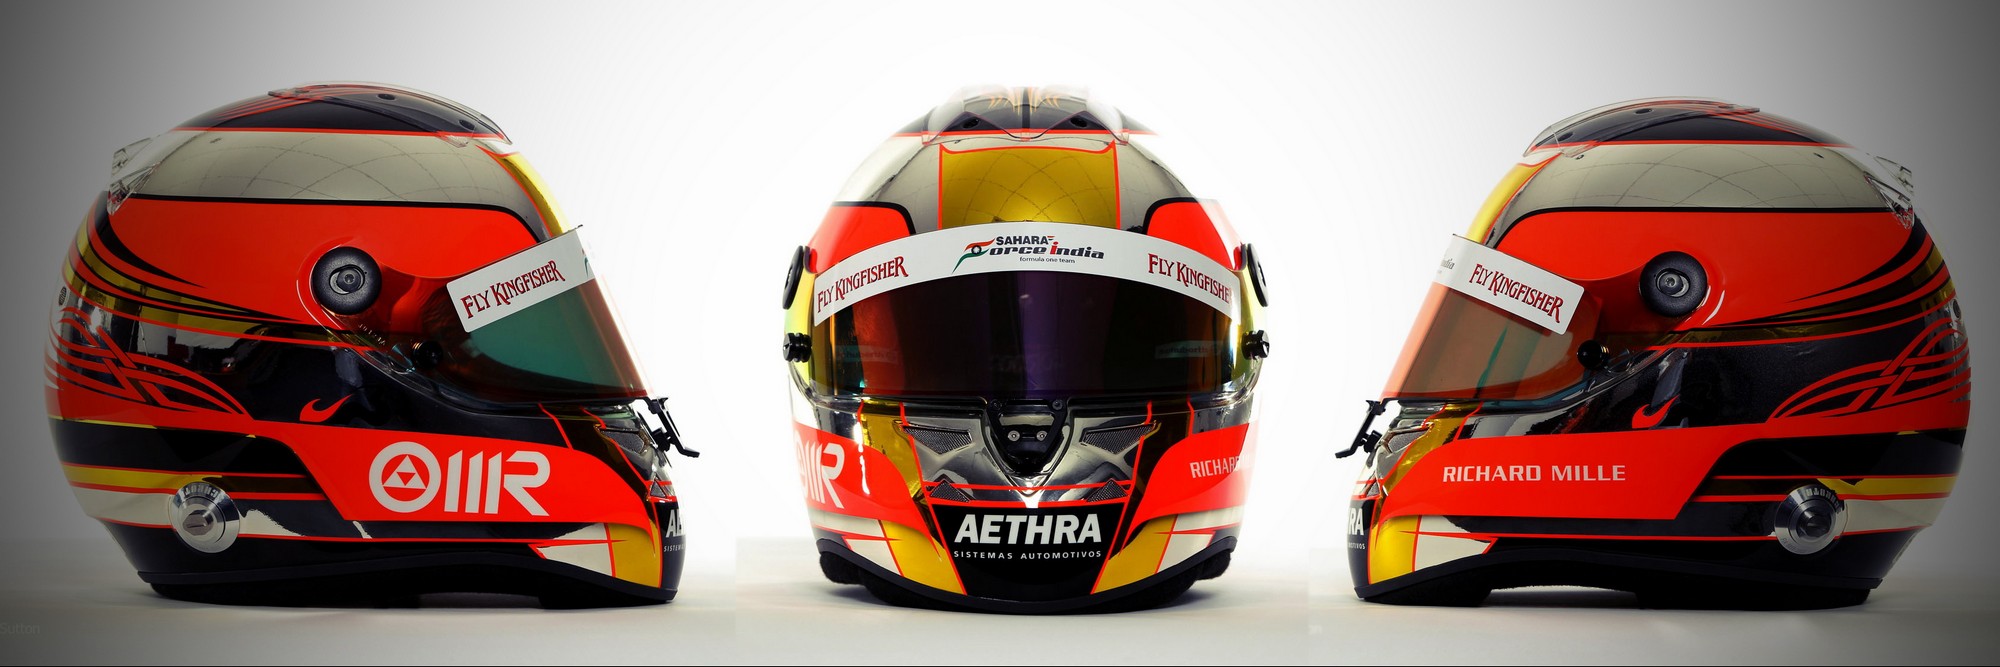 Шлем Жюля Бьянки на сезон 2012 года | 2012 helmet of Jules Bianchi